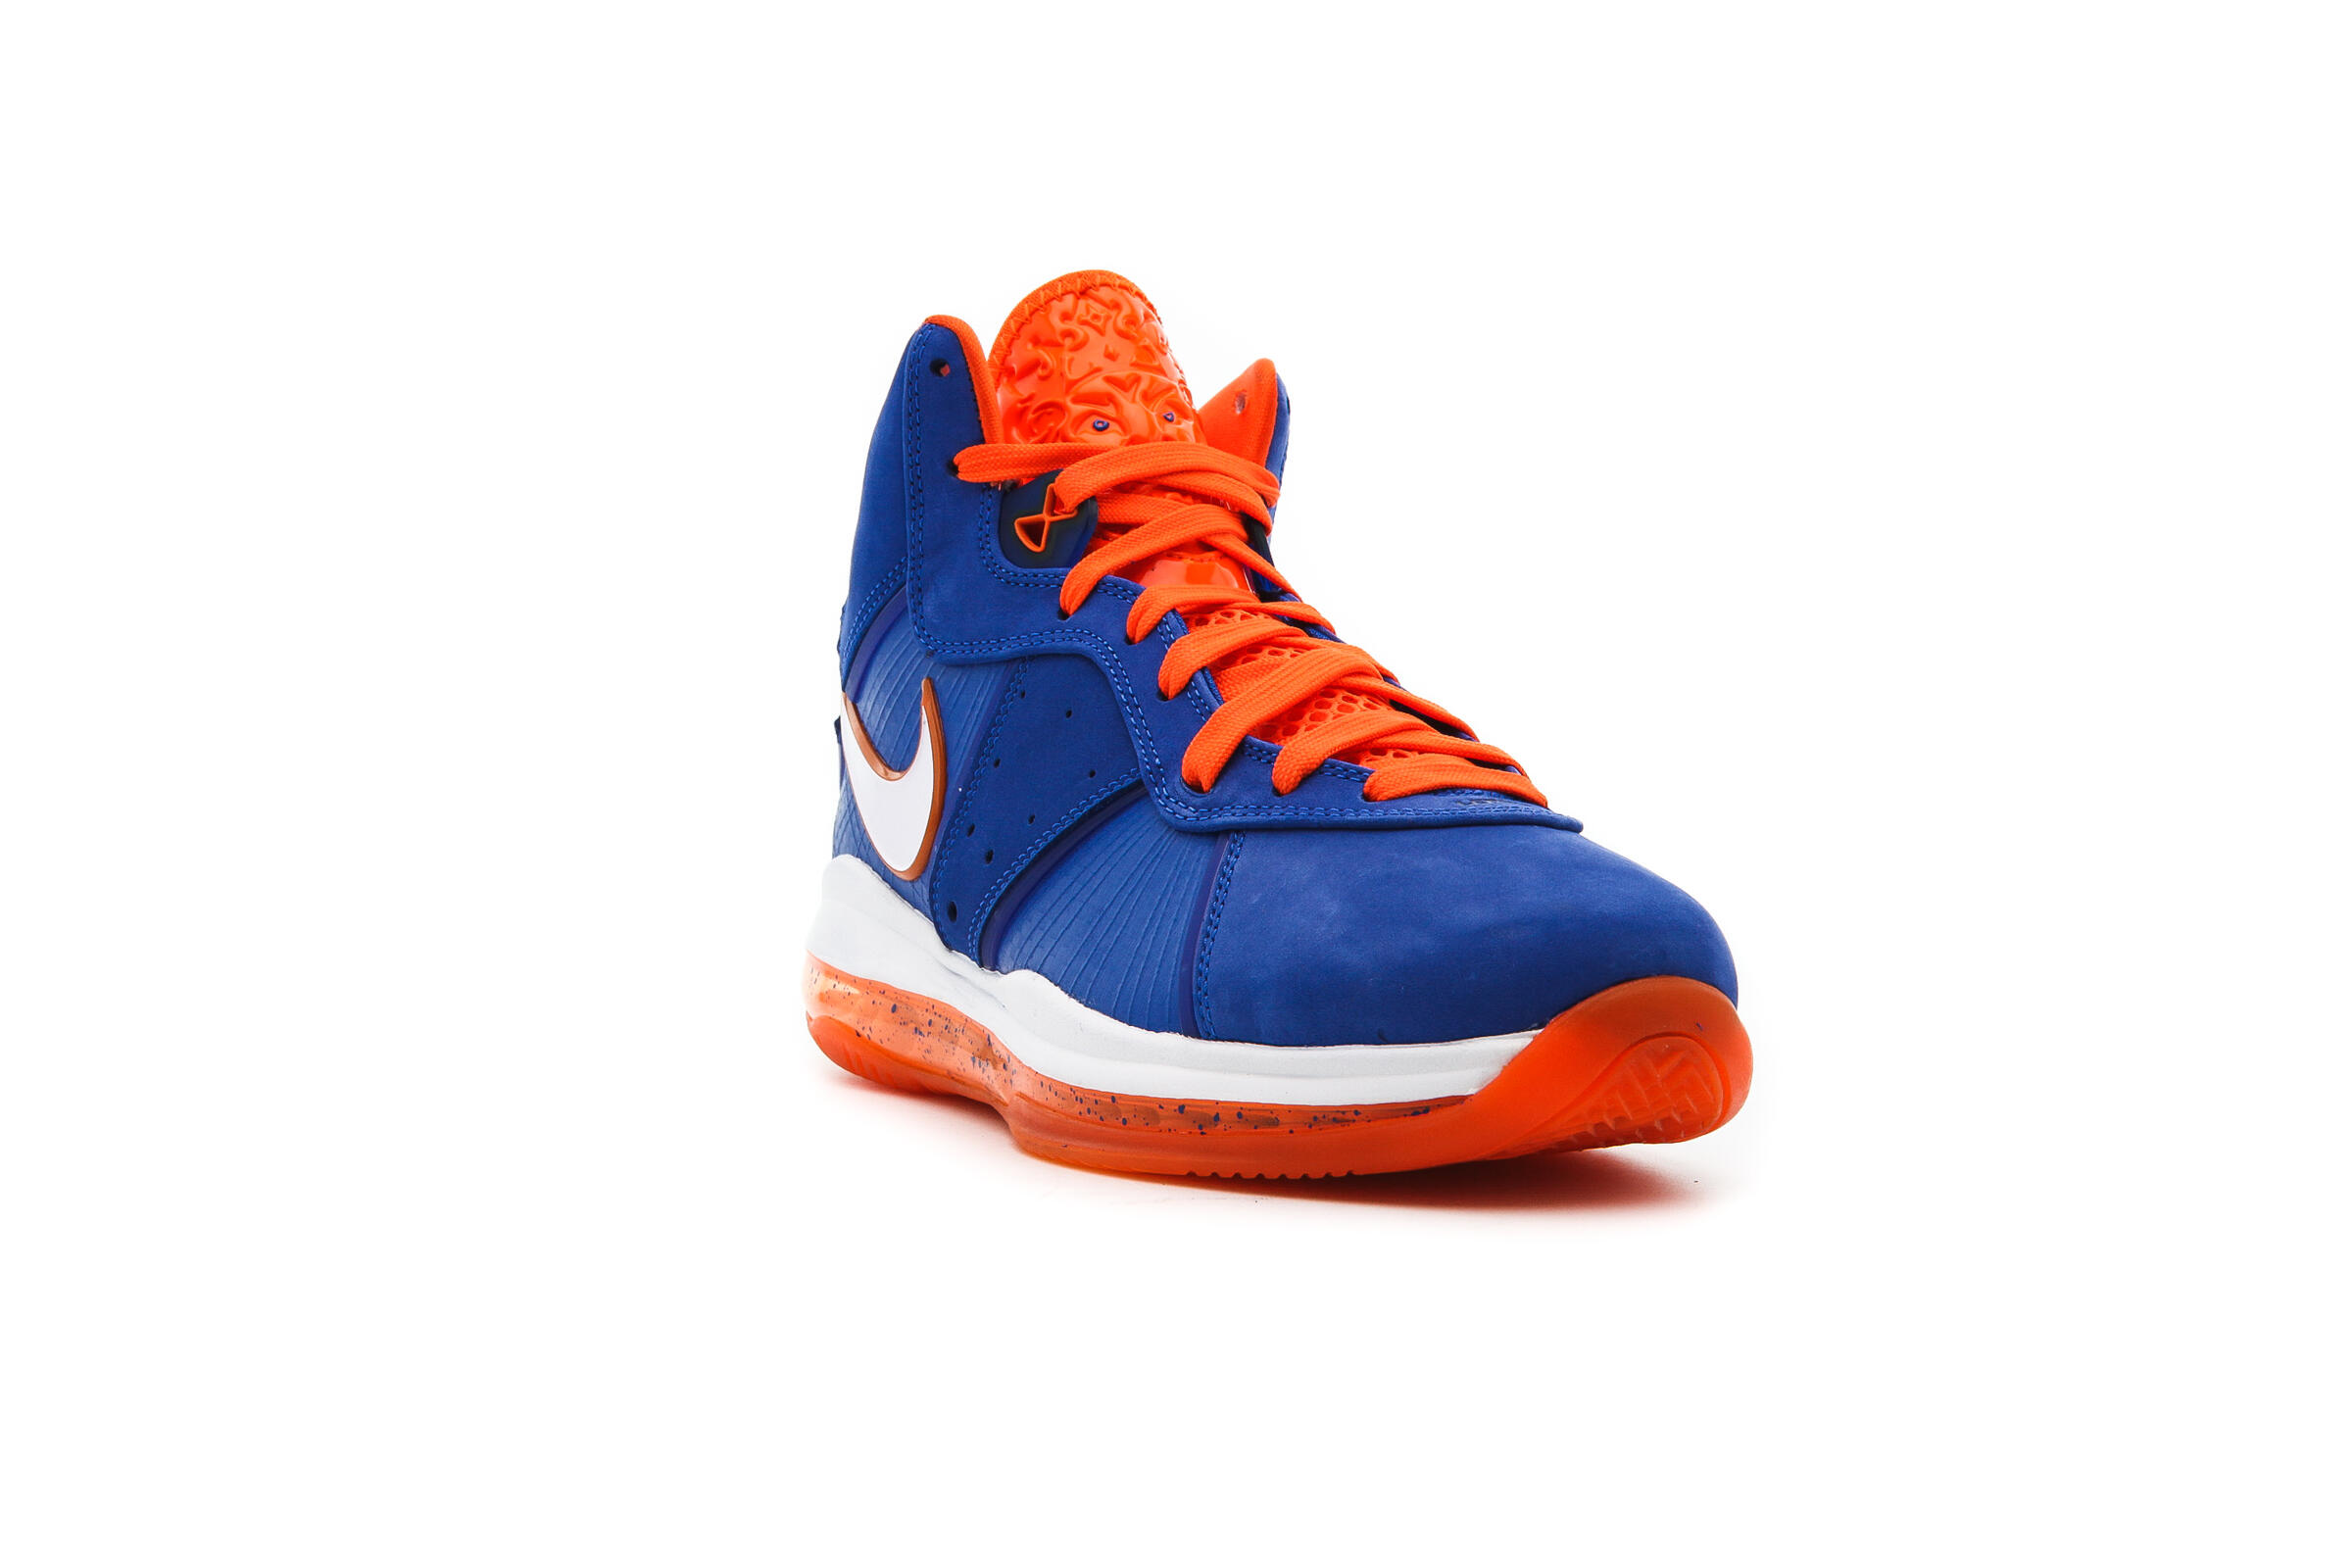 Nike LEBRON 8 "BLUE/ORANGE"